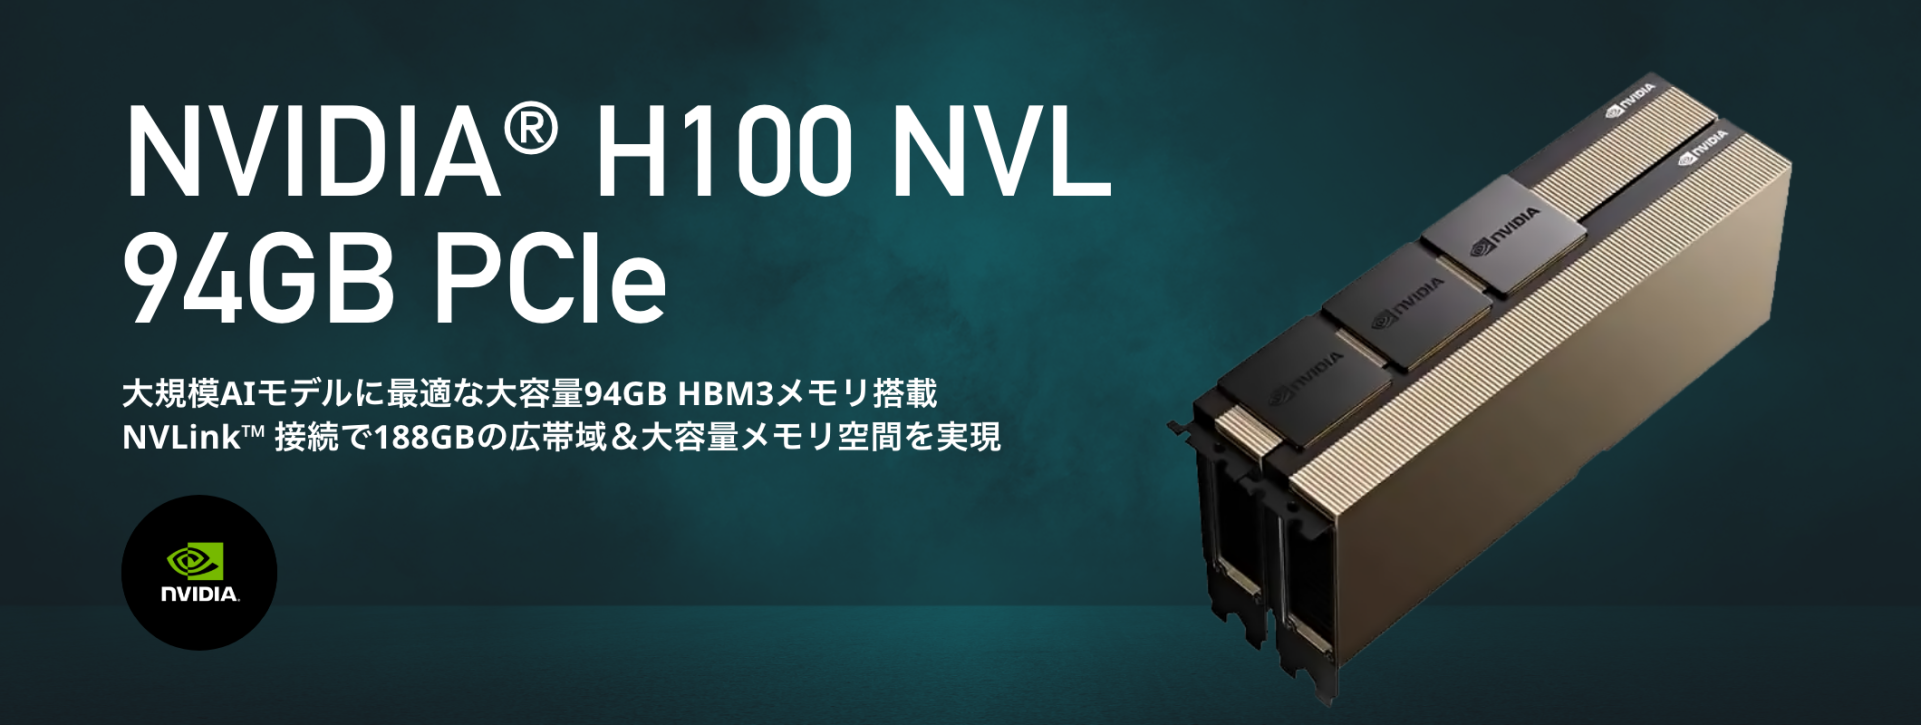 NVIDIA H100 94GB NVL PCIe